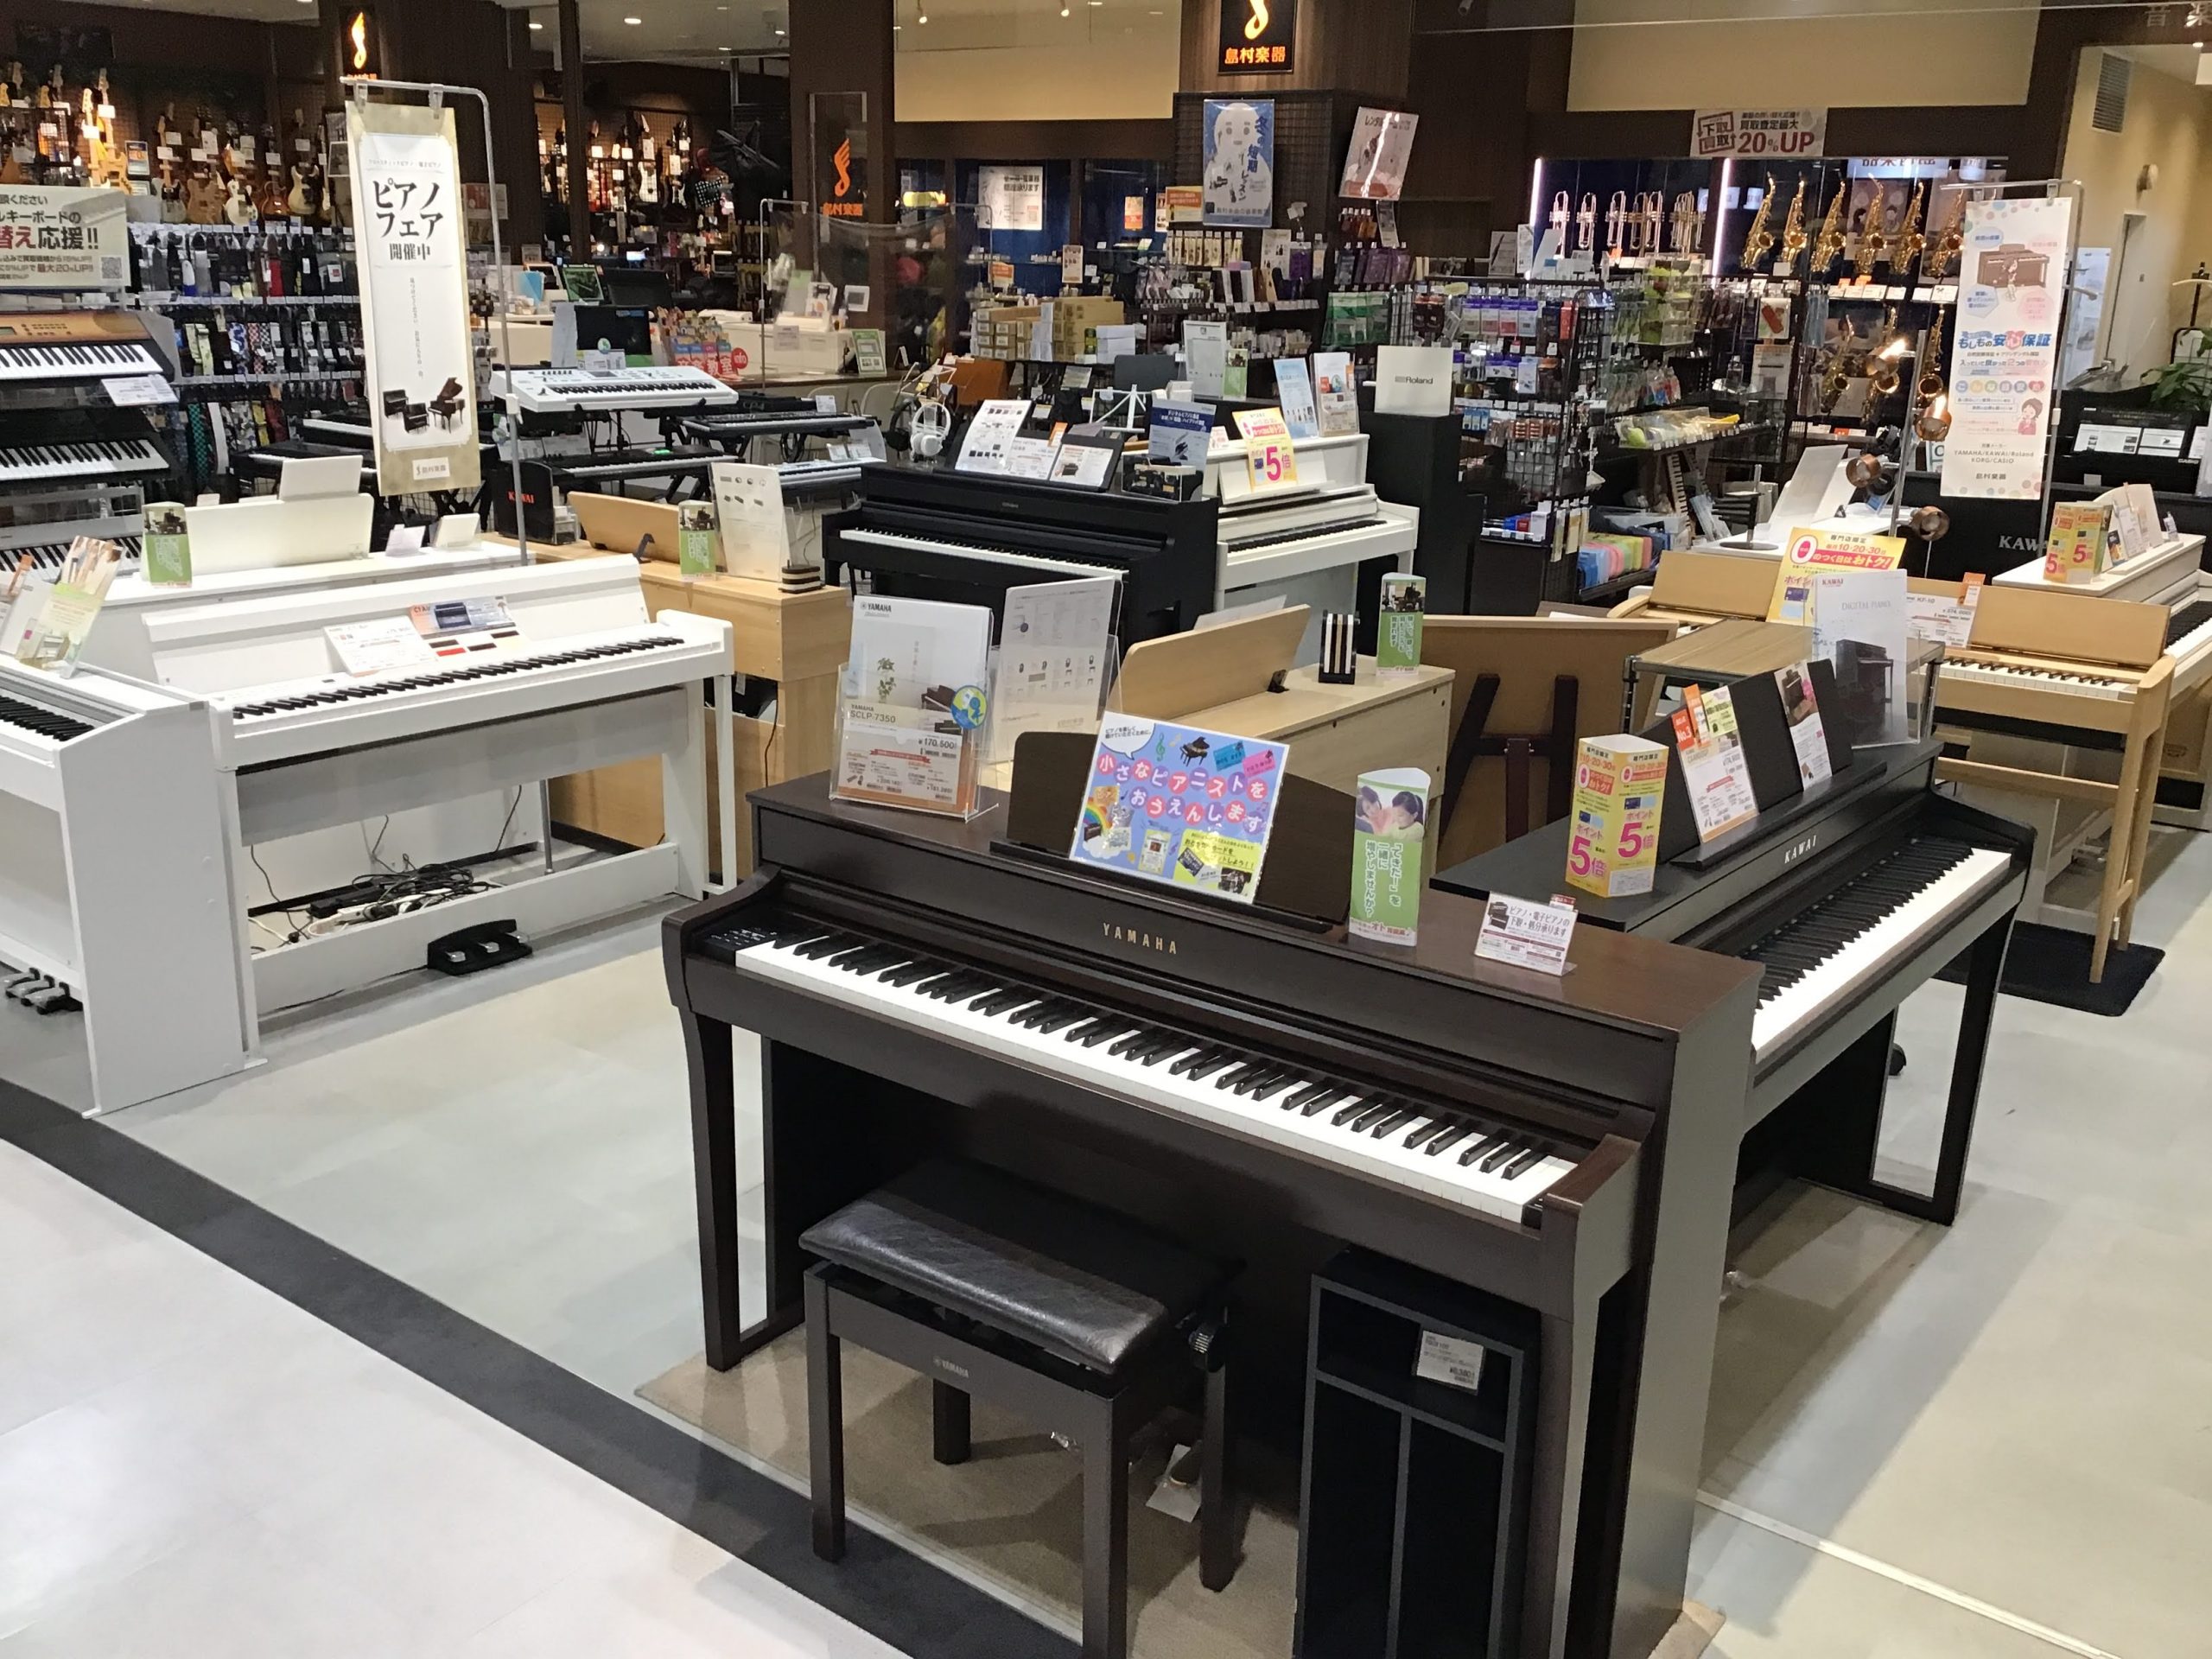 皆様こんにちは。名古屋茶屋店ピアノ担当:野口です。こちらでは現品限りの電子ピアノ、展示品特価商品のご案内をさせて頂きます。気になる商品がございましたらお気軽にお問い合わせ下さいませ。※1台限りの商品となりますので売り切れの場合はご了承下さい。 CONTENTS展示特価品一覧シマムラミュージックカード […]